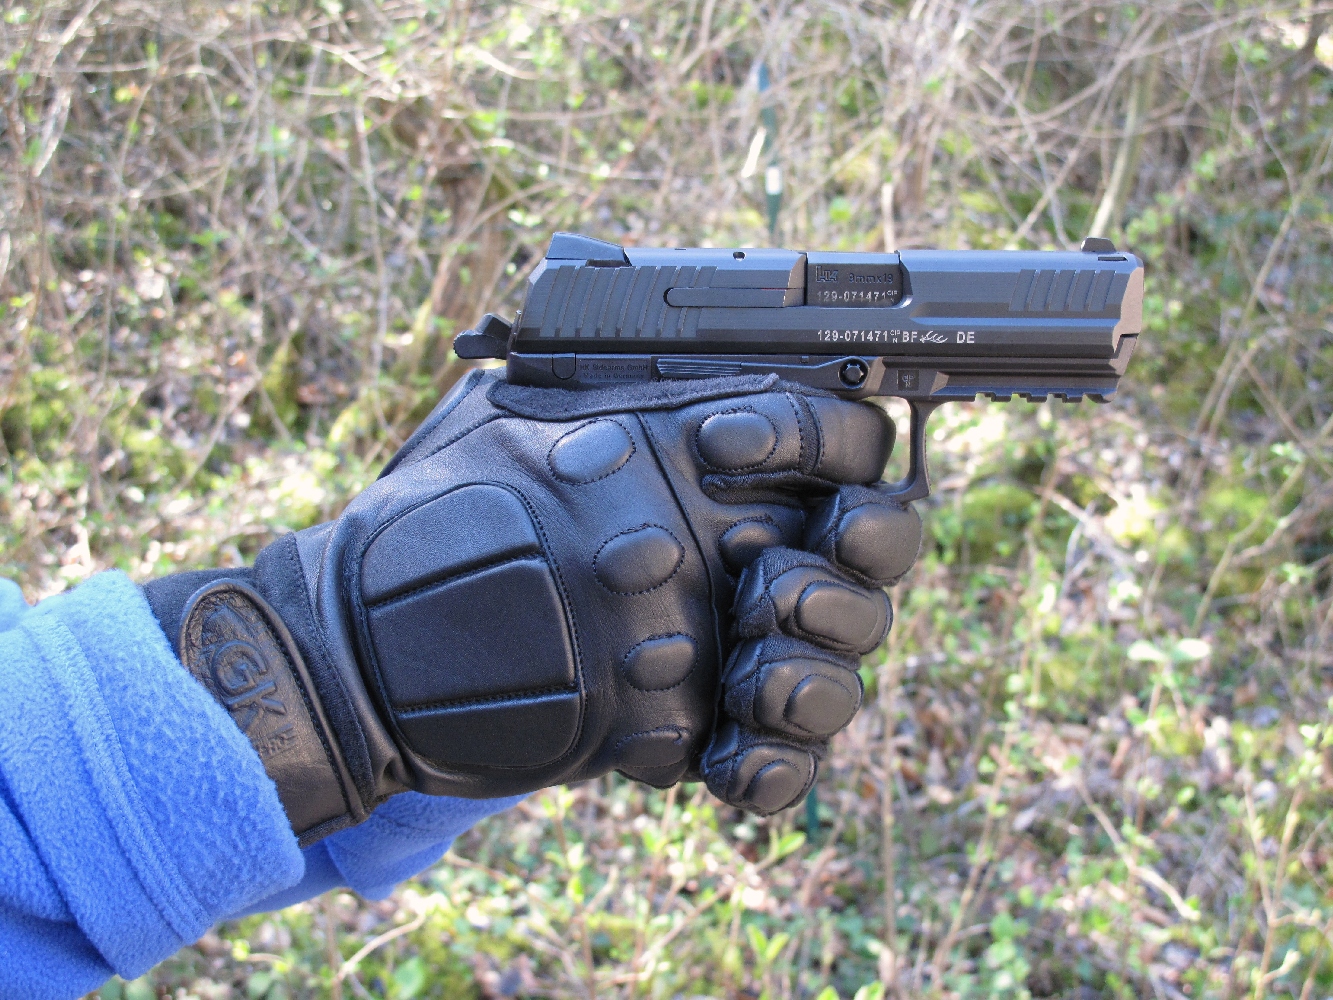 Les gants d’intervention en cuir, qui bénéficient d’un haut niveau de protection, pêchent au tir par leur revêtement peu accrocheur sous la paume et les doigts.